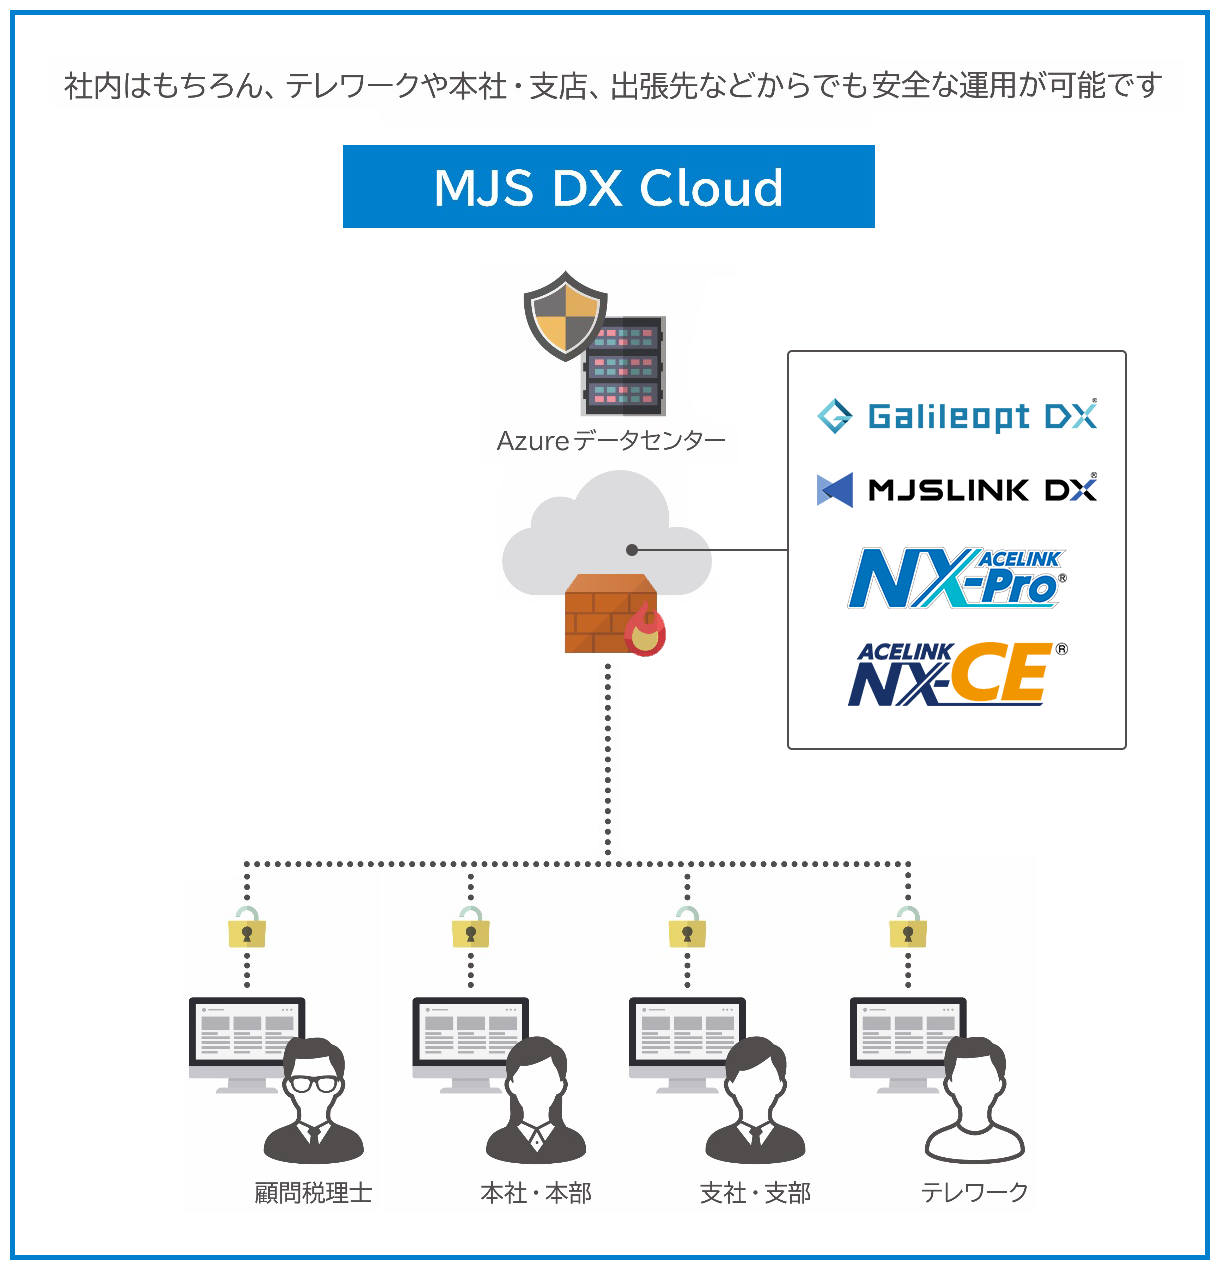 MJS DX Cloud説明図